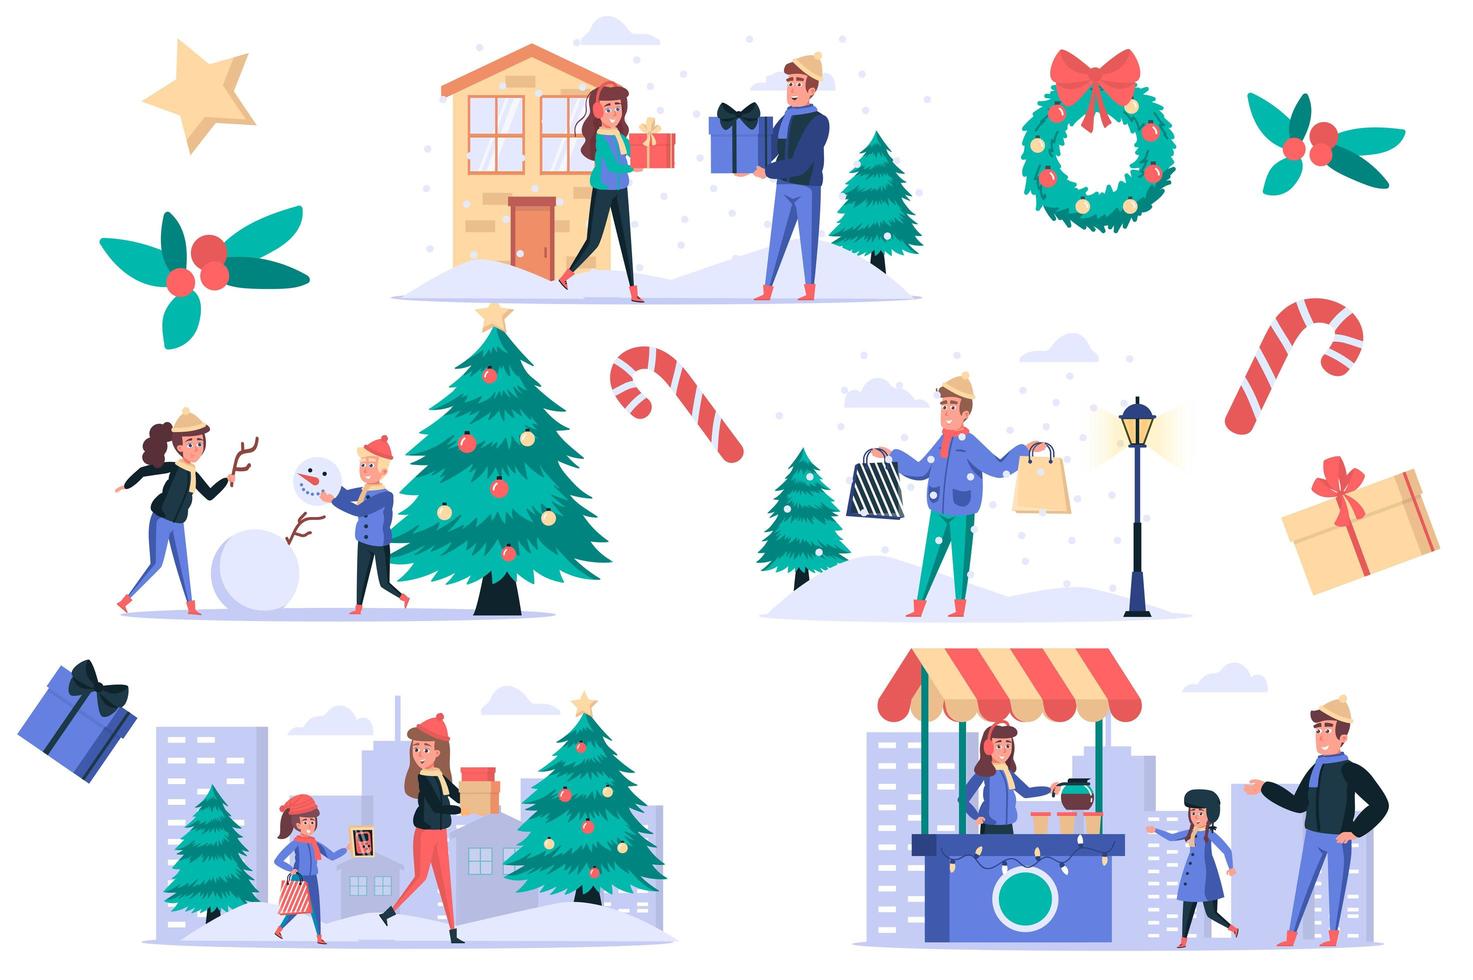 jul firar isolerade element set. bunt människor köper och ger gåvor, gör snögubbe, handlar, dricker varmt kaffe i gatubutiken. skaparkit för vektorillustration i platt tecknad design vektor